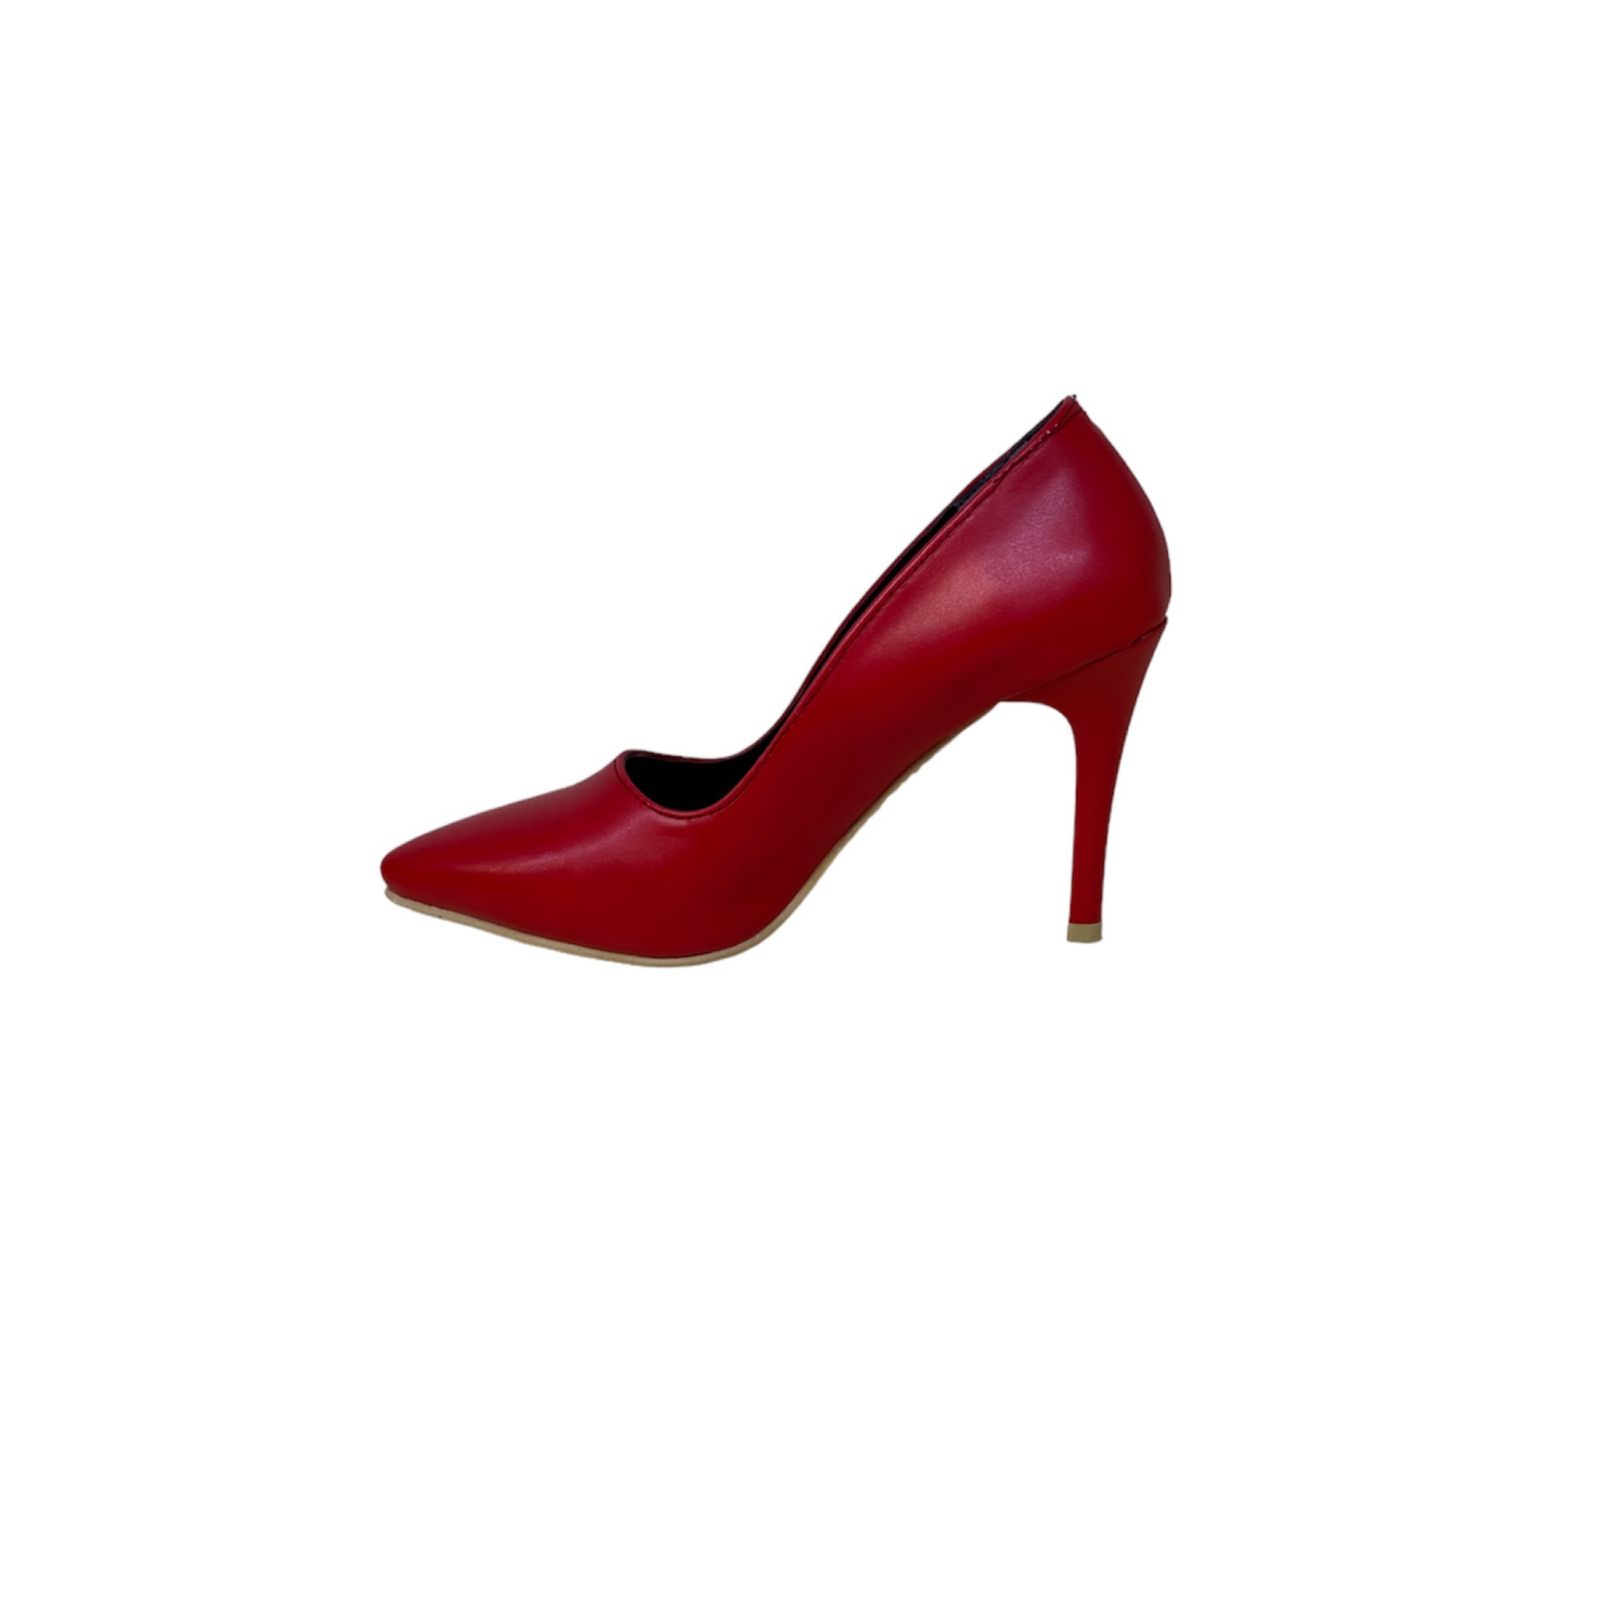 کفش زنانه مدل لودوشکا فرهاد بیاله رنگ قرمز -  - 3